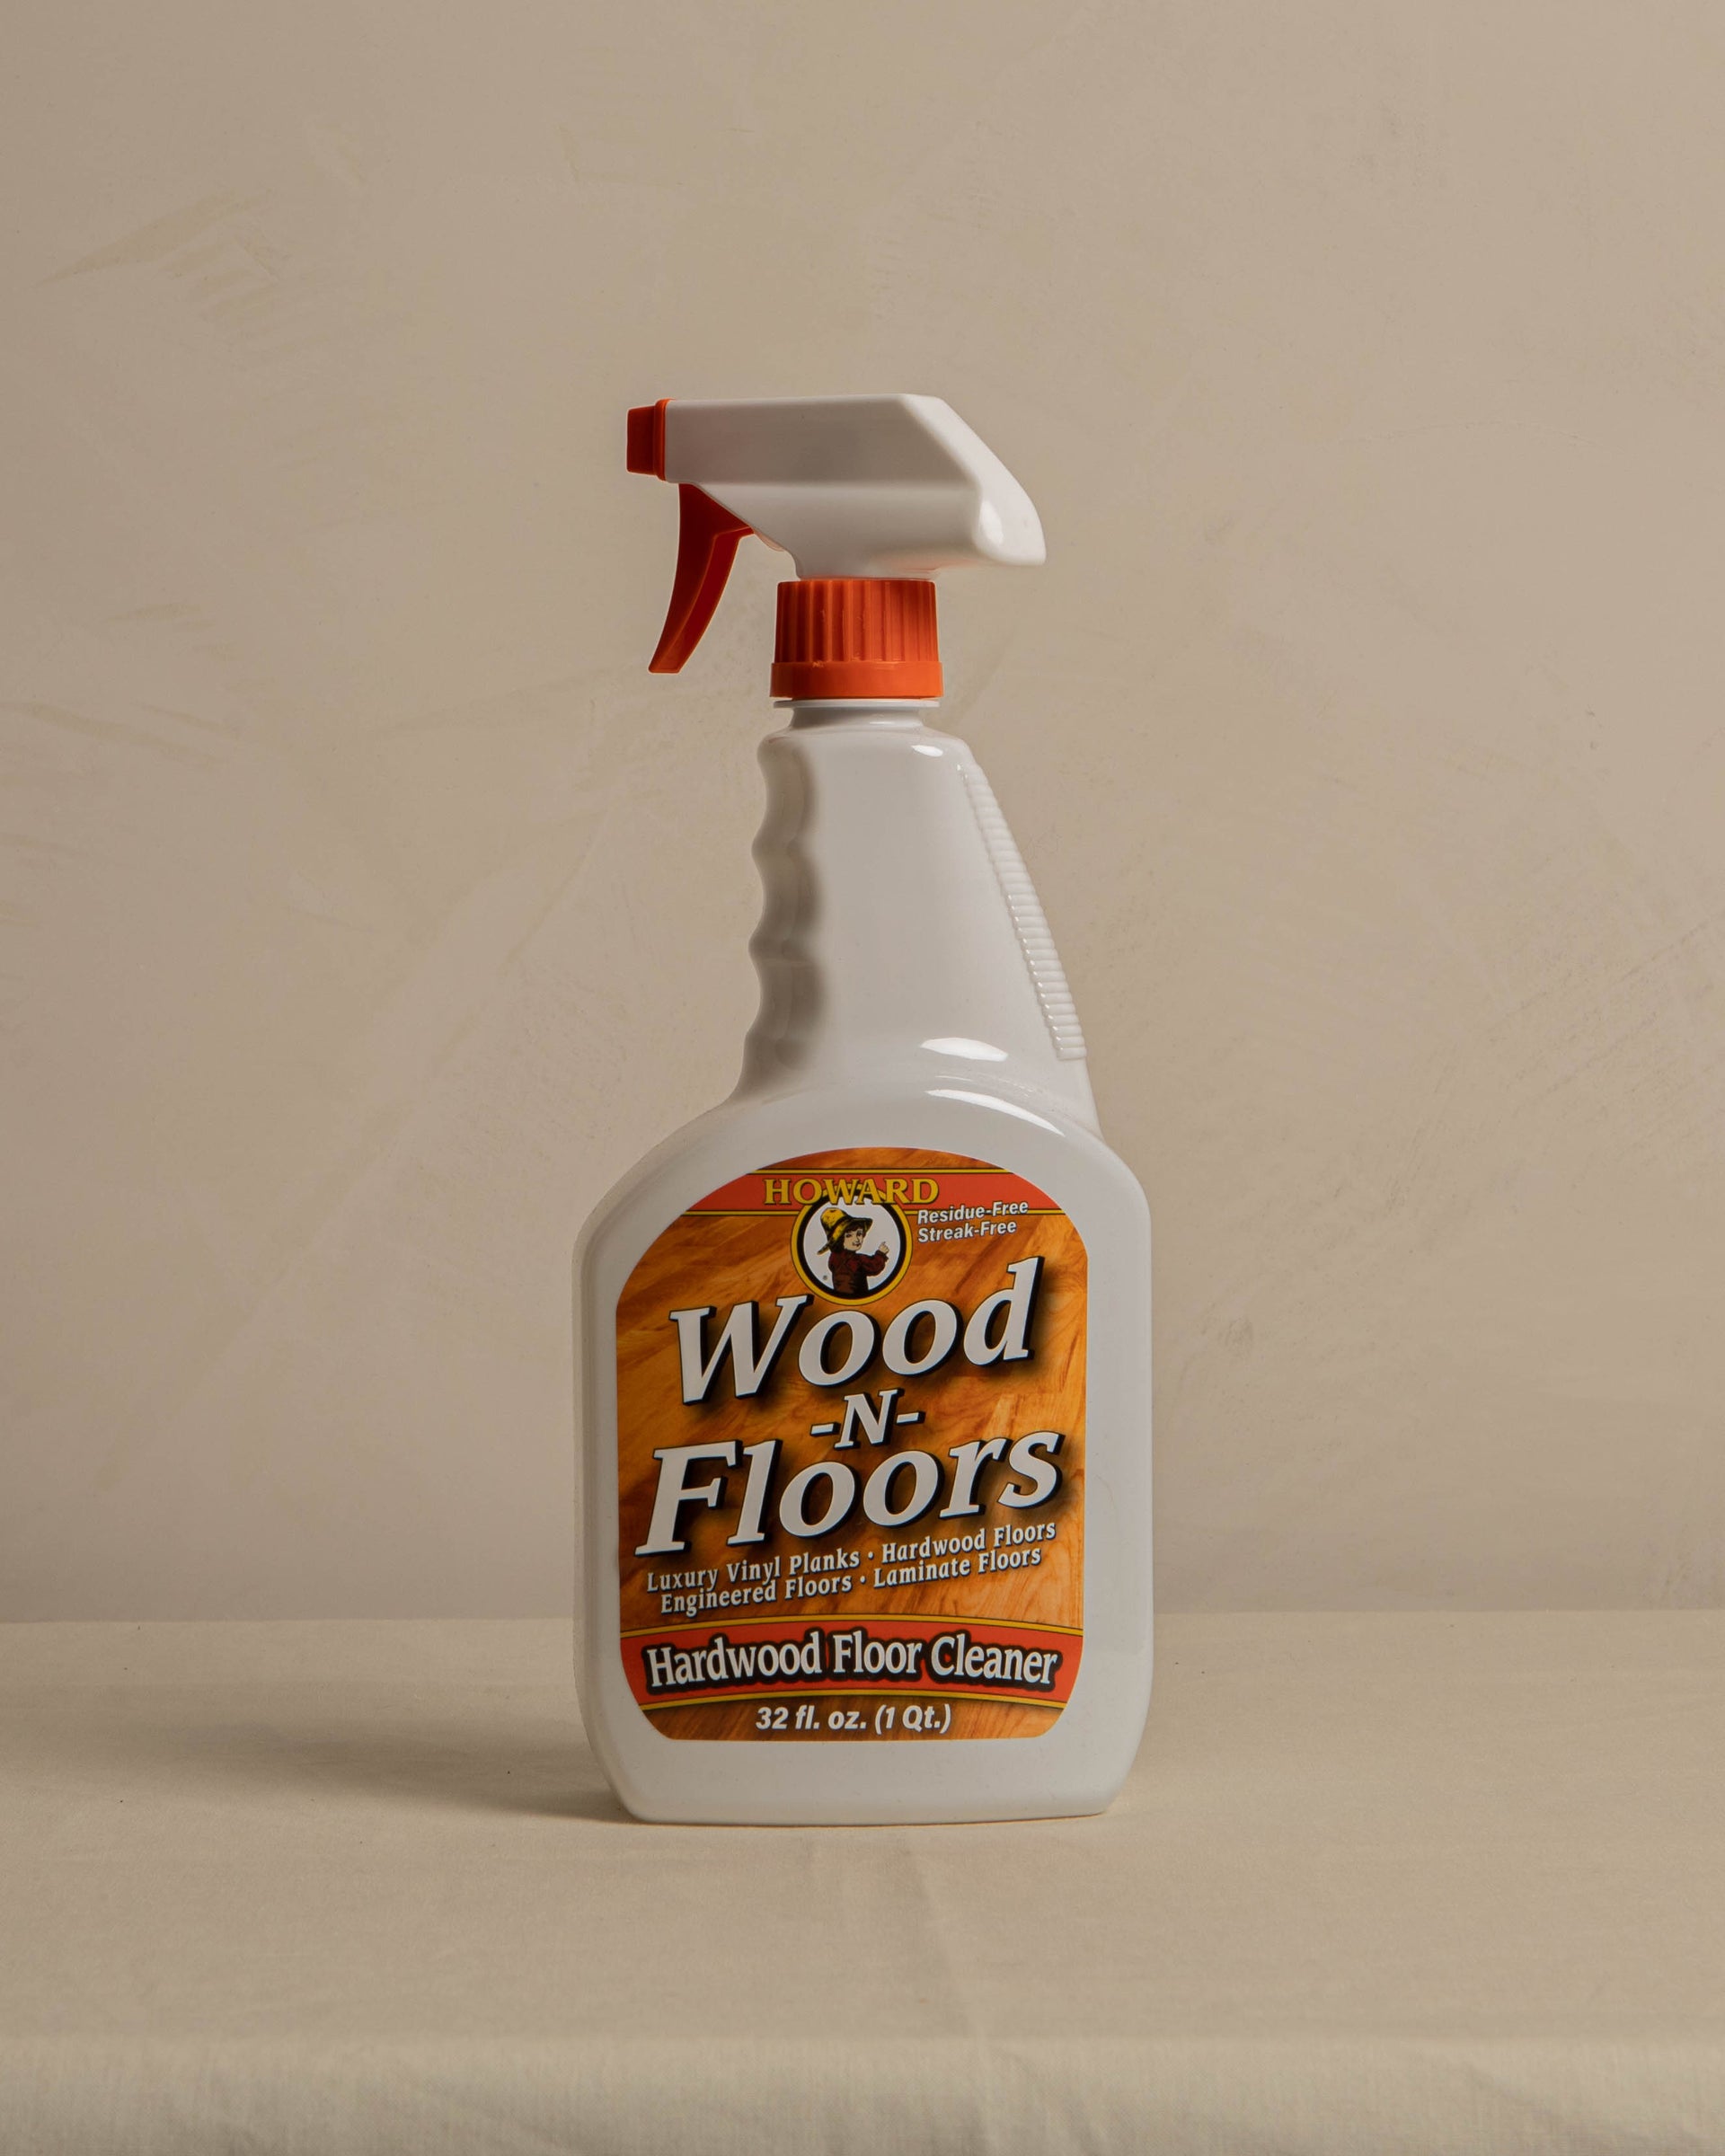 Wood-N-Floors by Howard